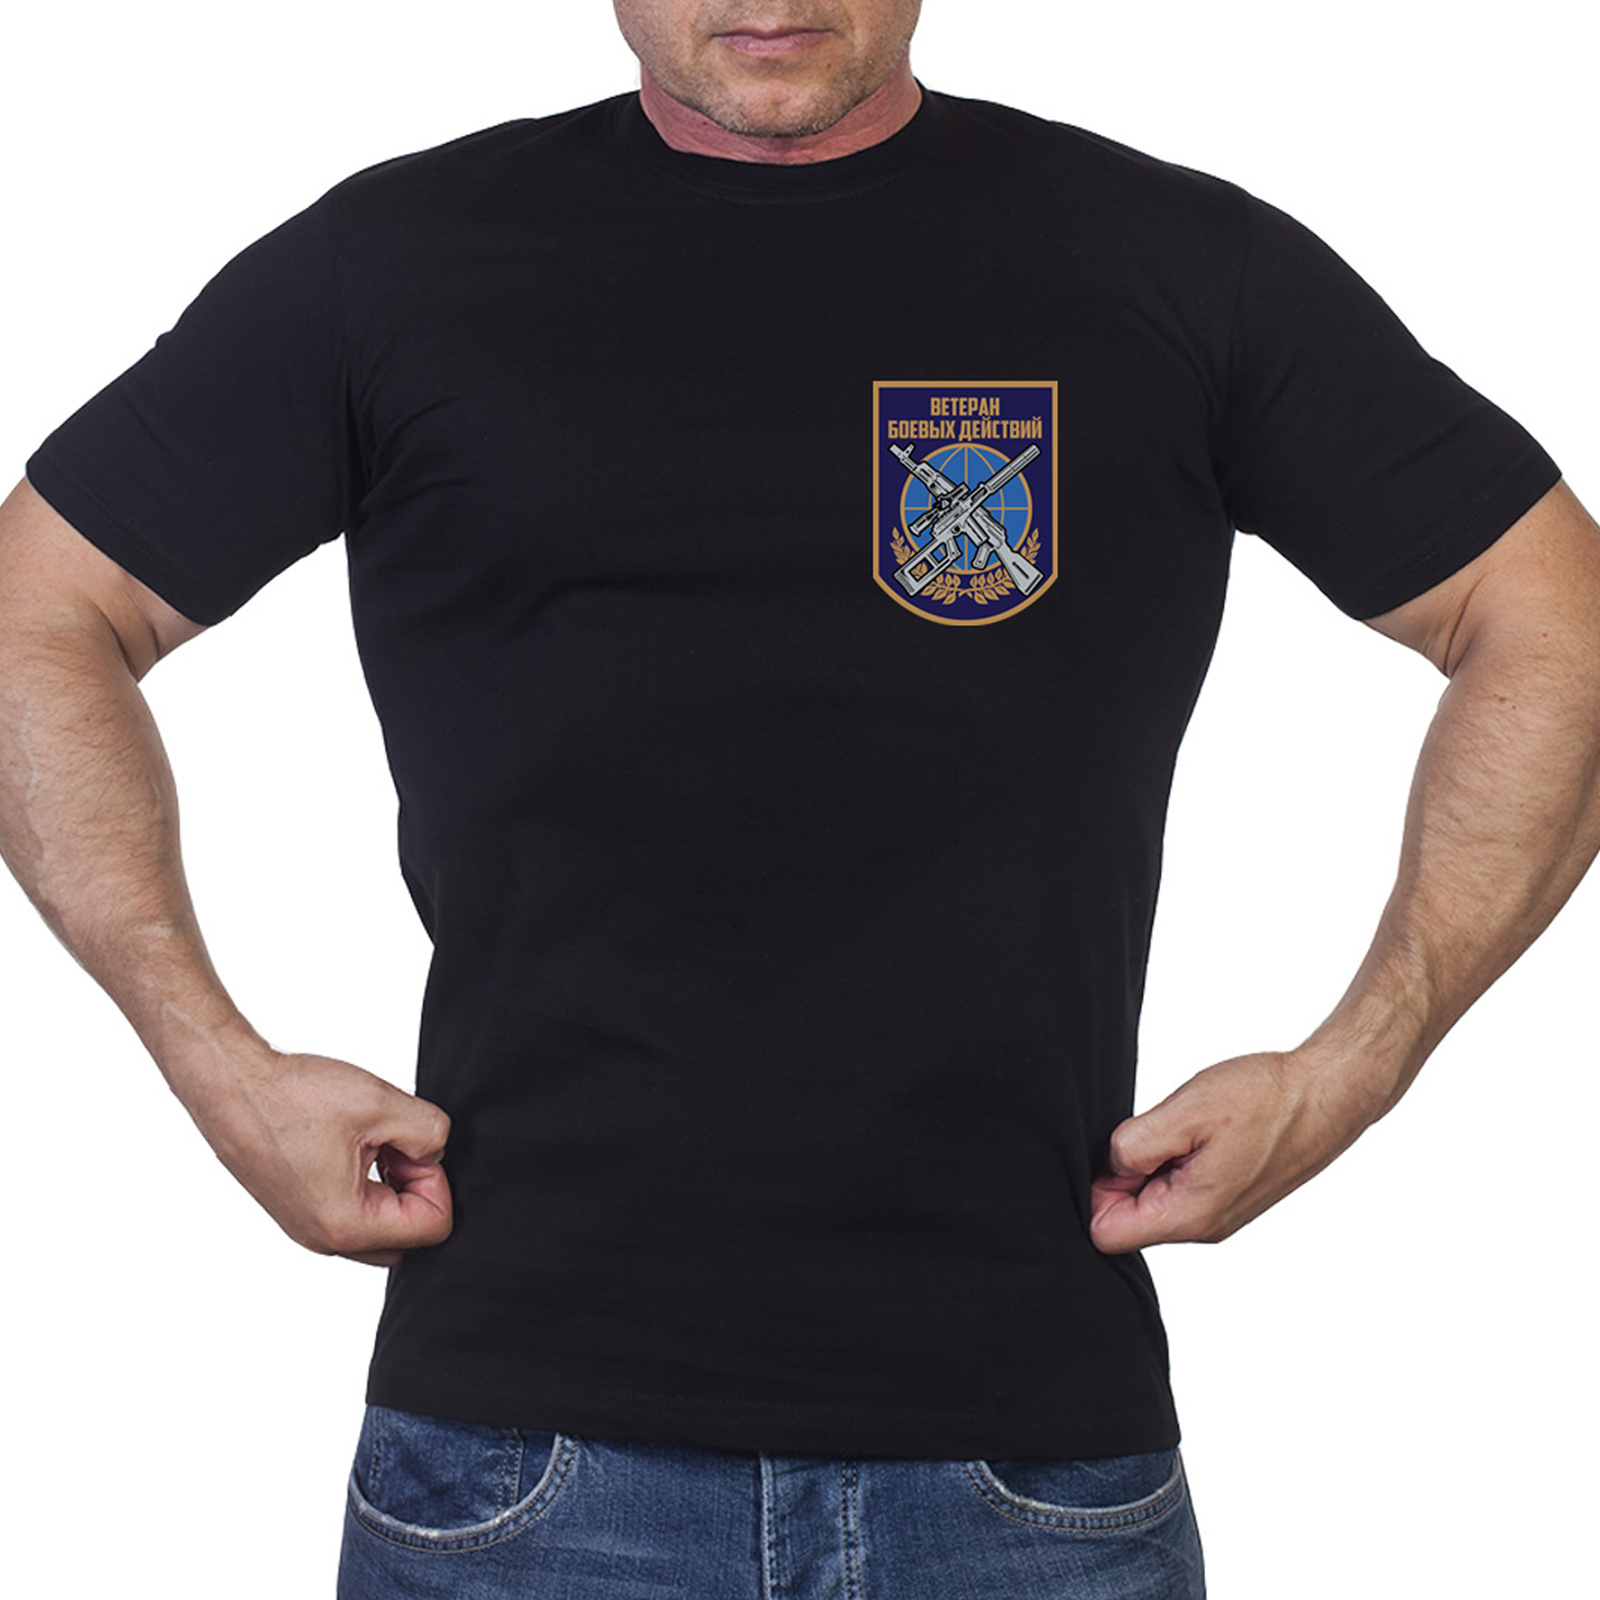 Мужская футболка с надписью «Ветеран боевых действий»